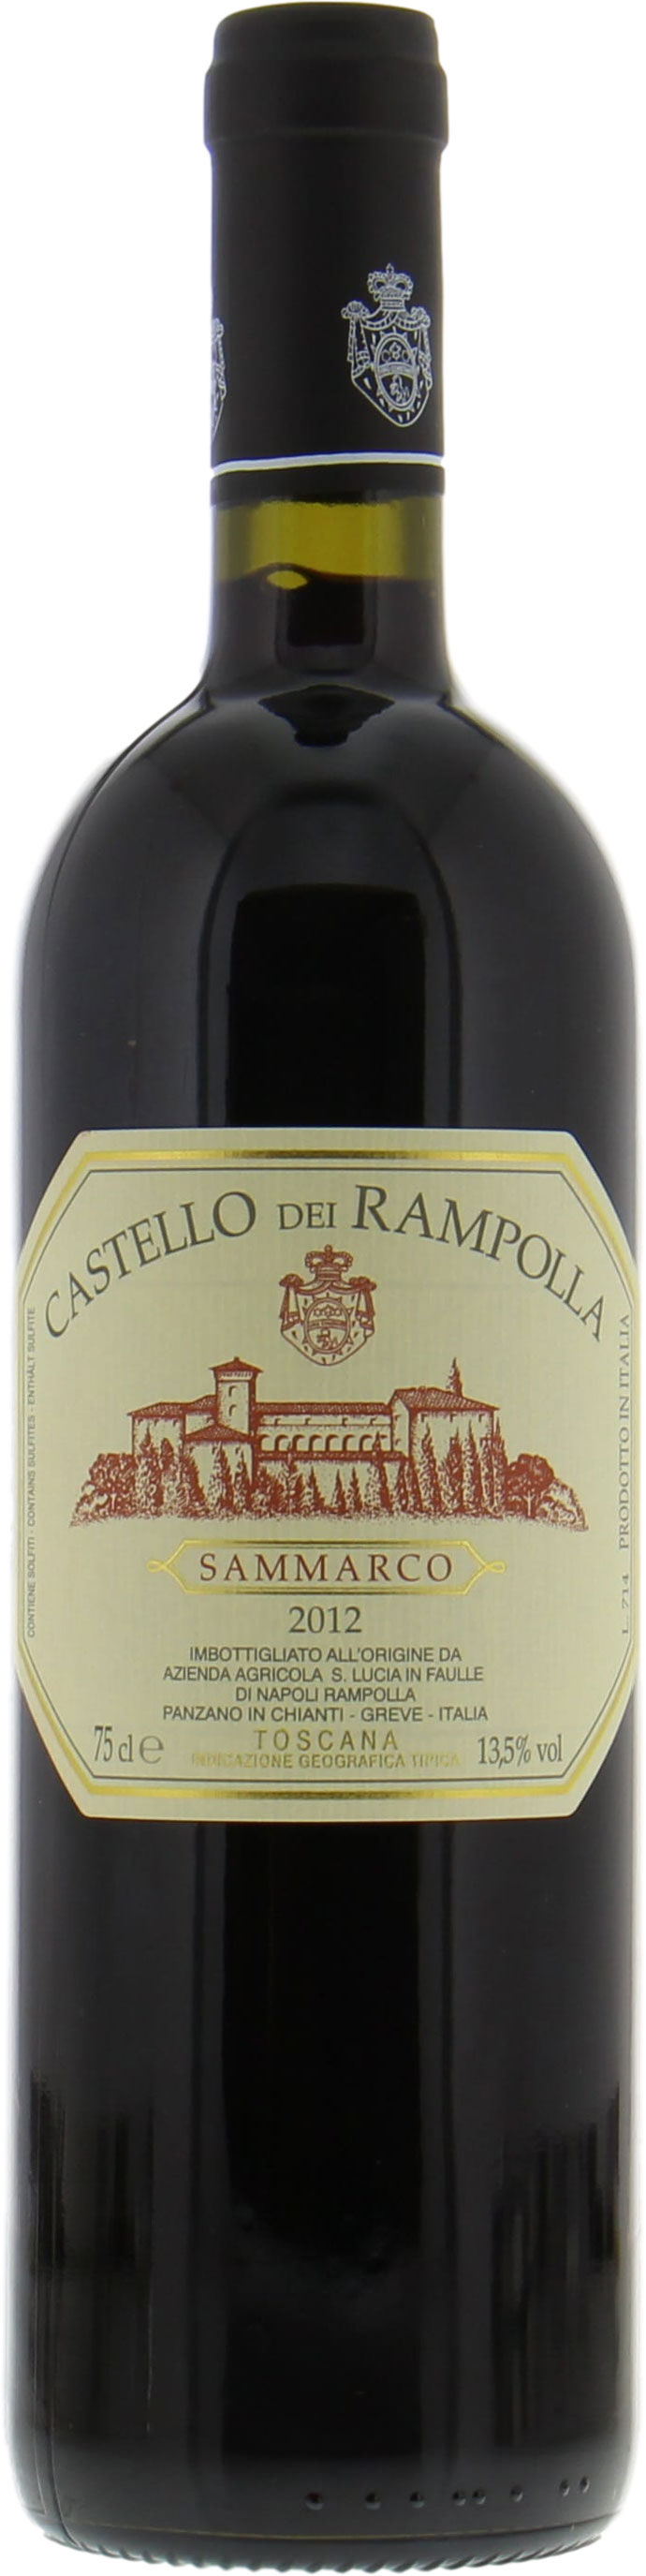 Castello dei Rampolla - Sammarco 2012